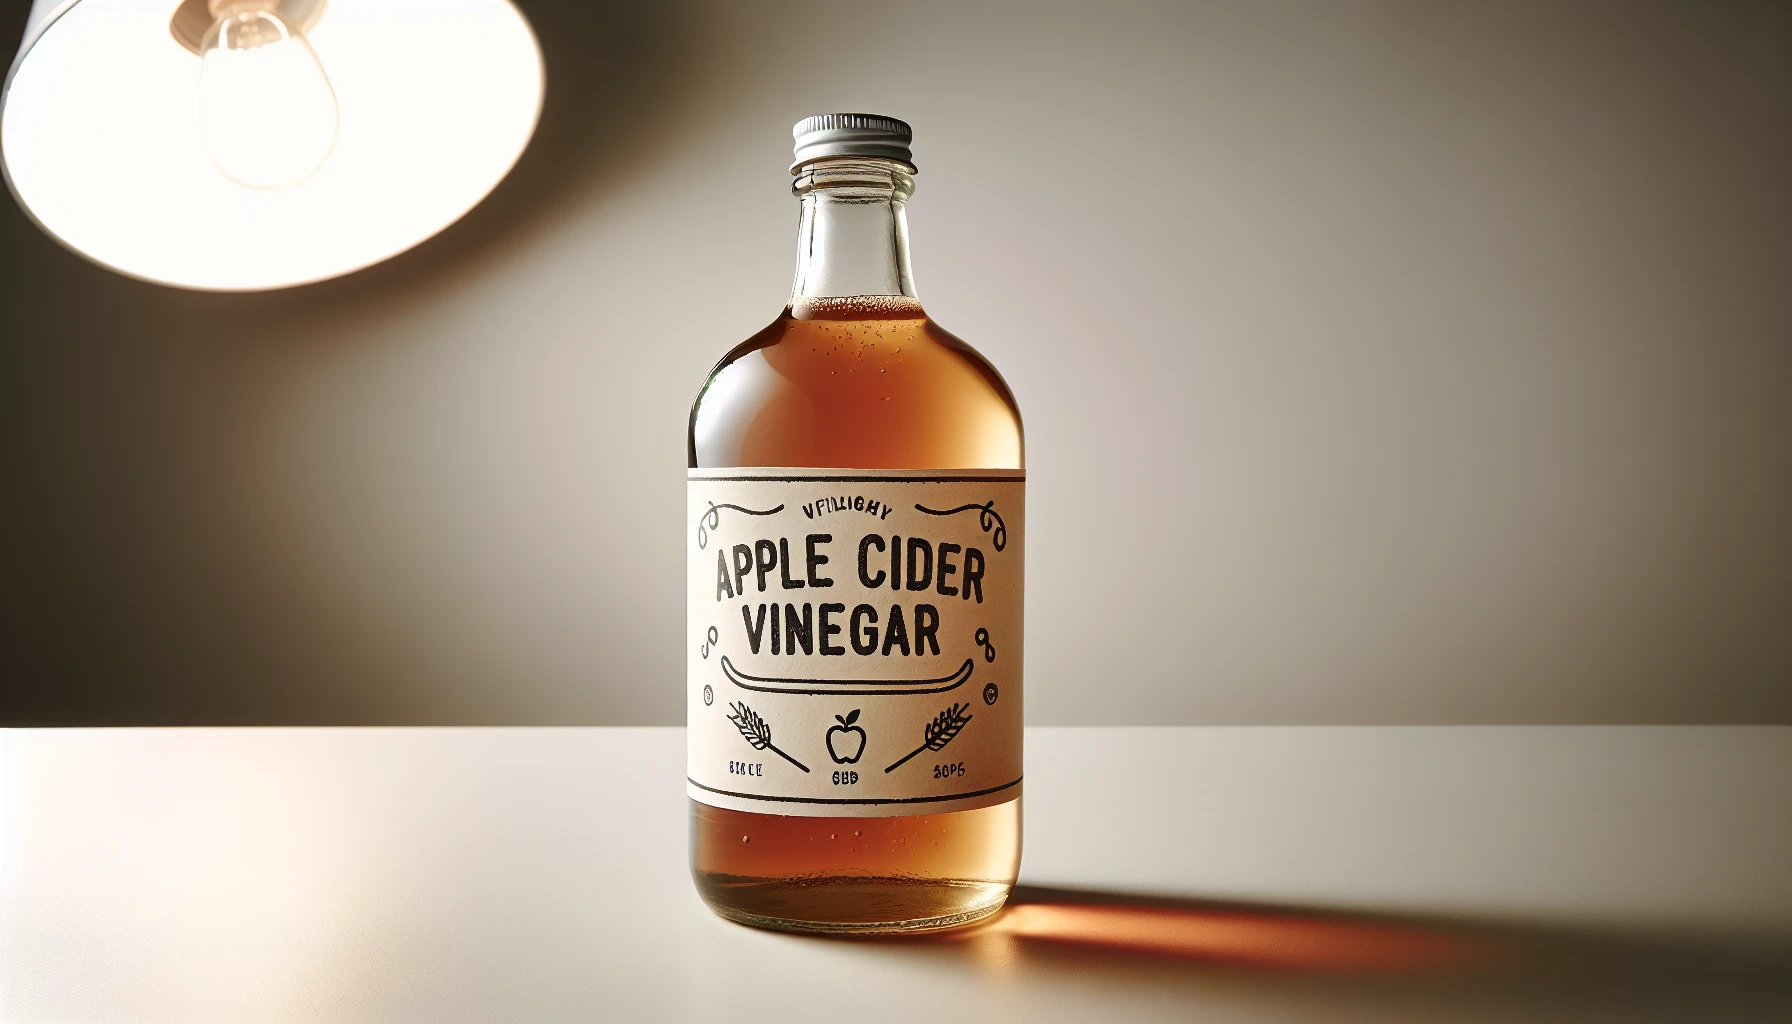 Apple cider vinegar toner for skin pH balance